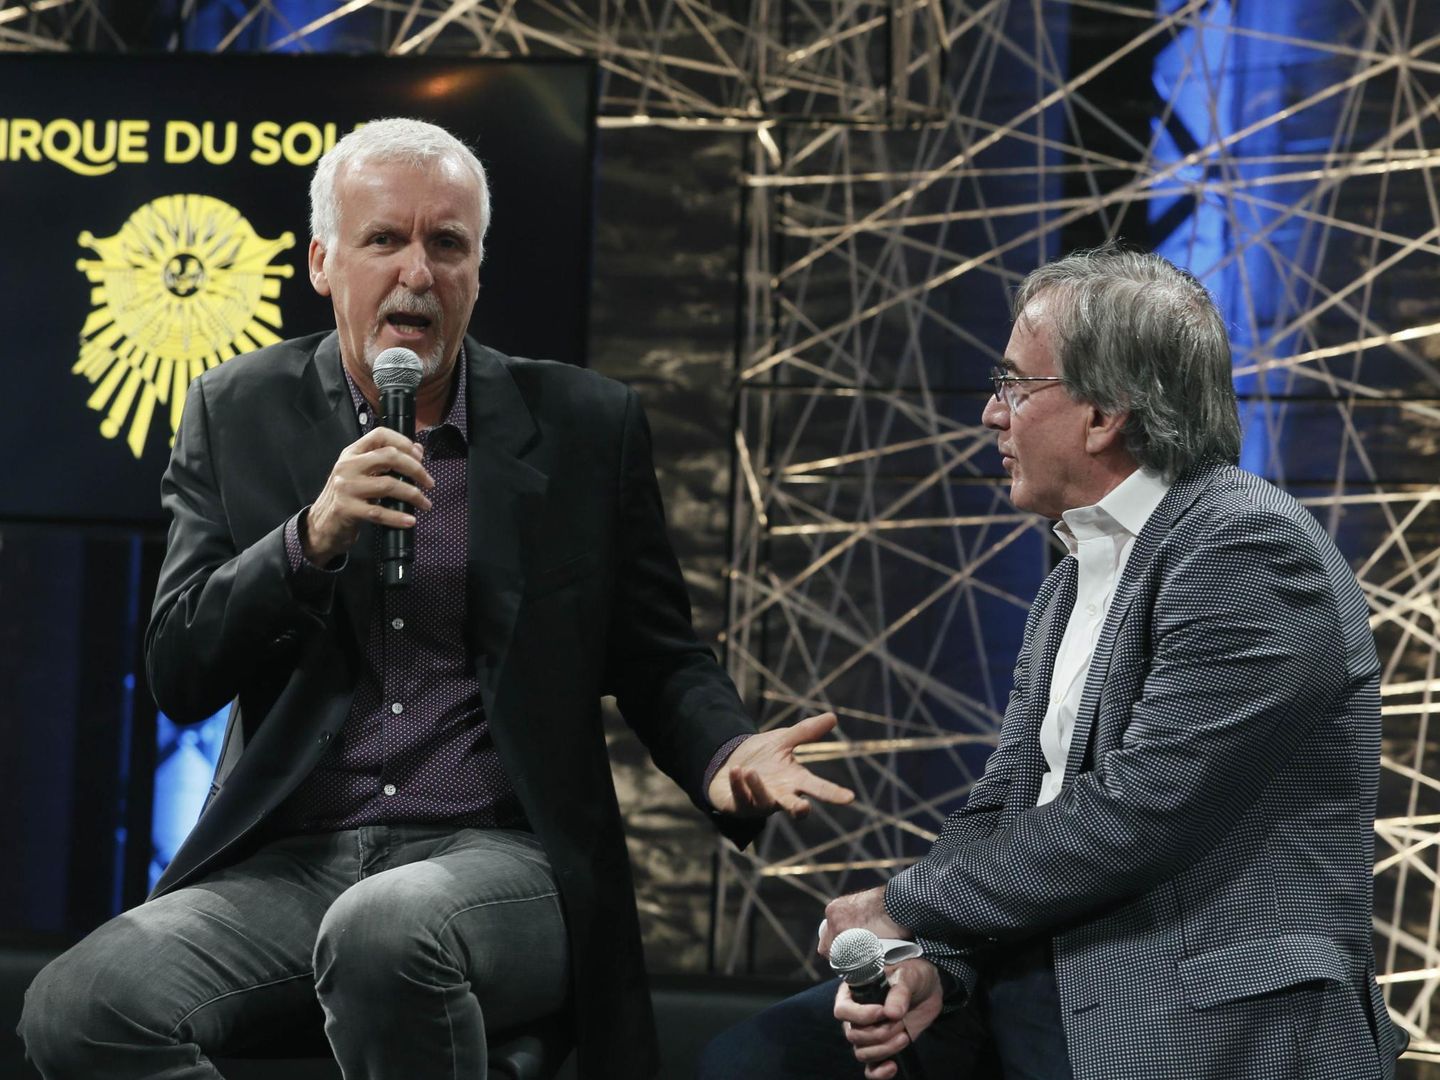 El presidente del Circo del Sol, Daniel Lamarre, a la derecha, conversa con el director de cine James Cameron. (EFE)